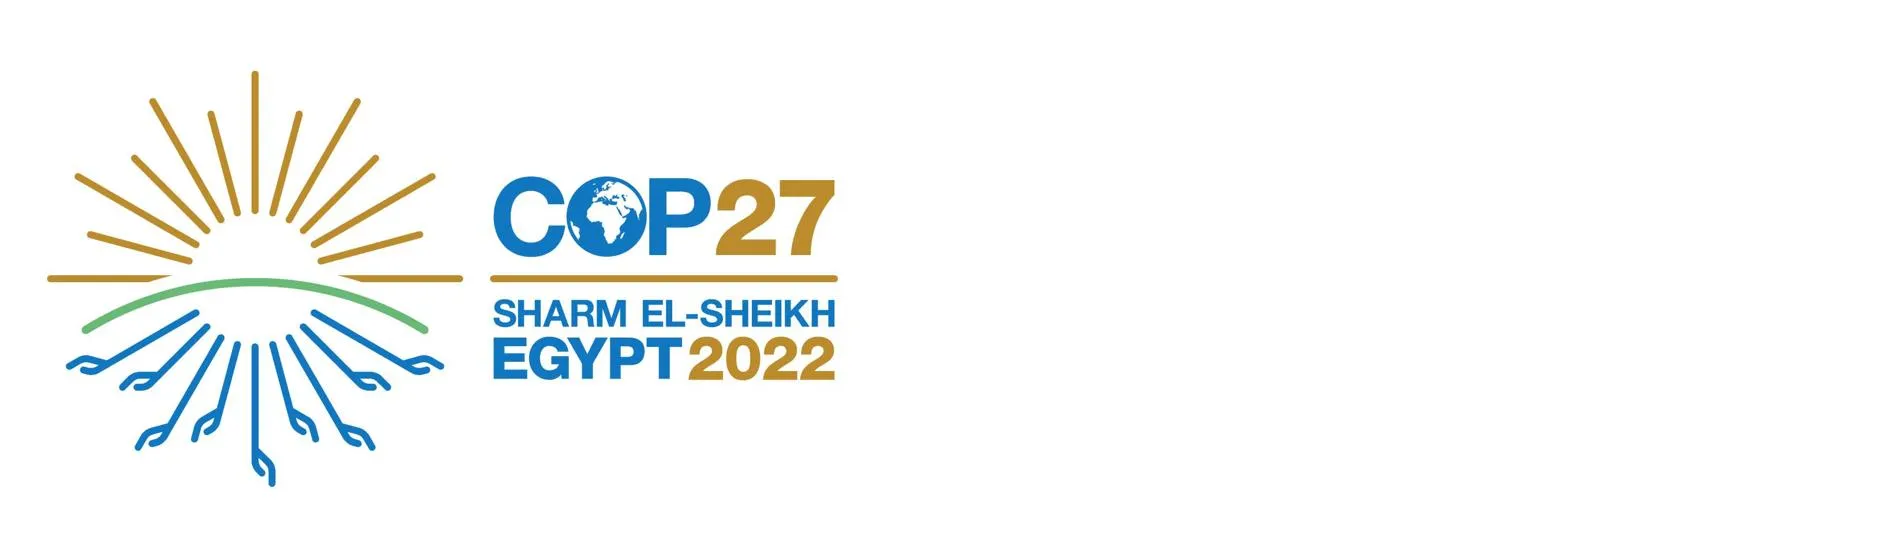 cop27-logo-hero